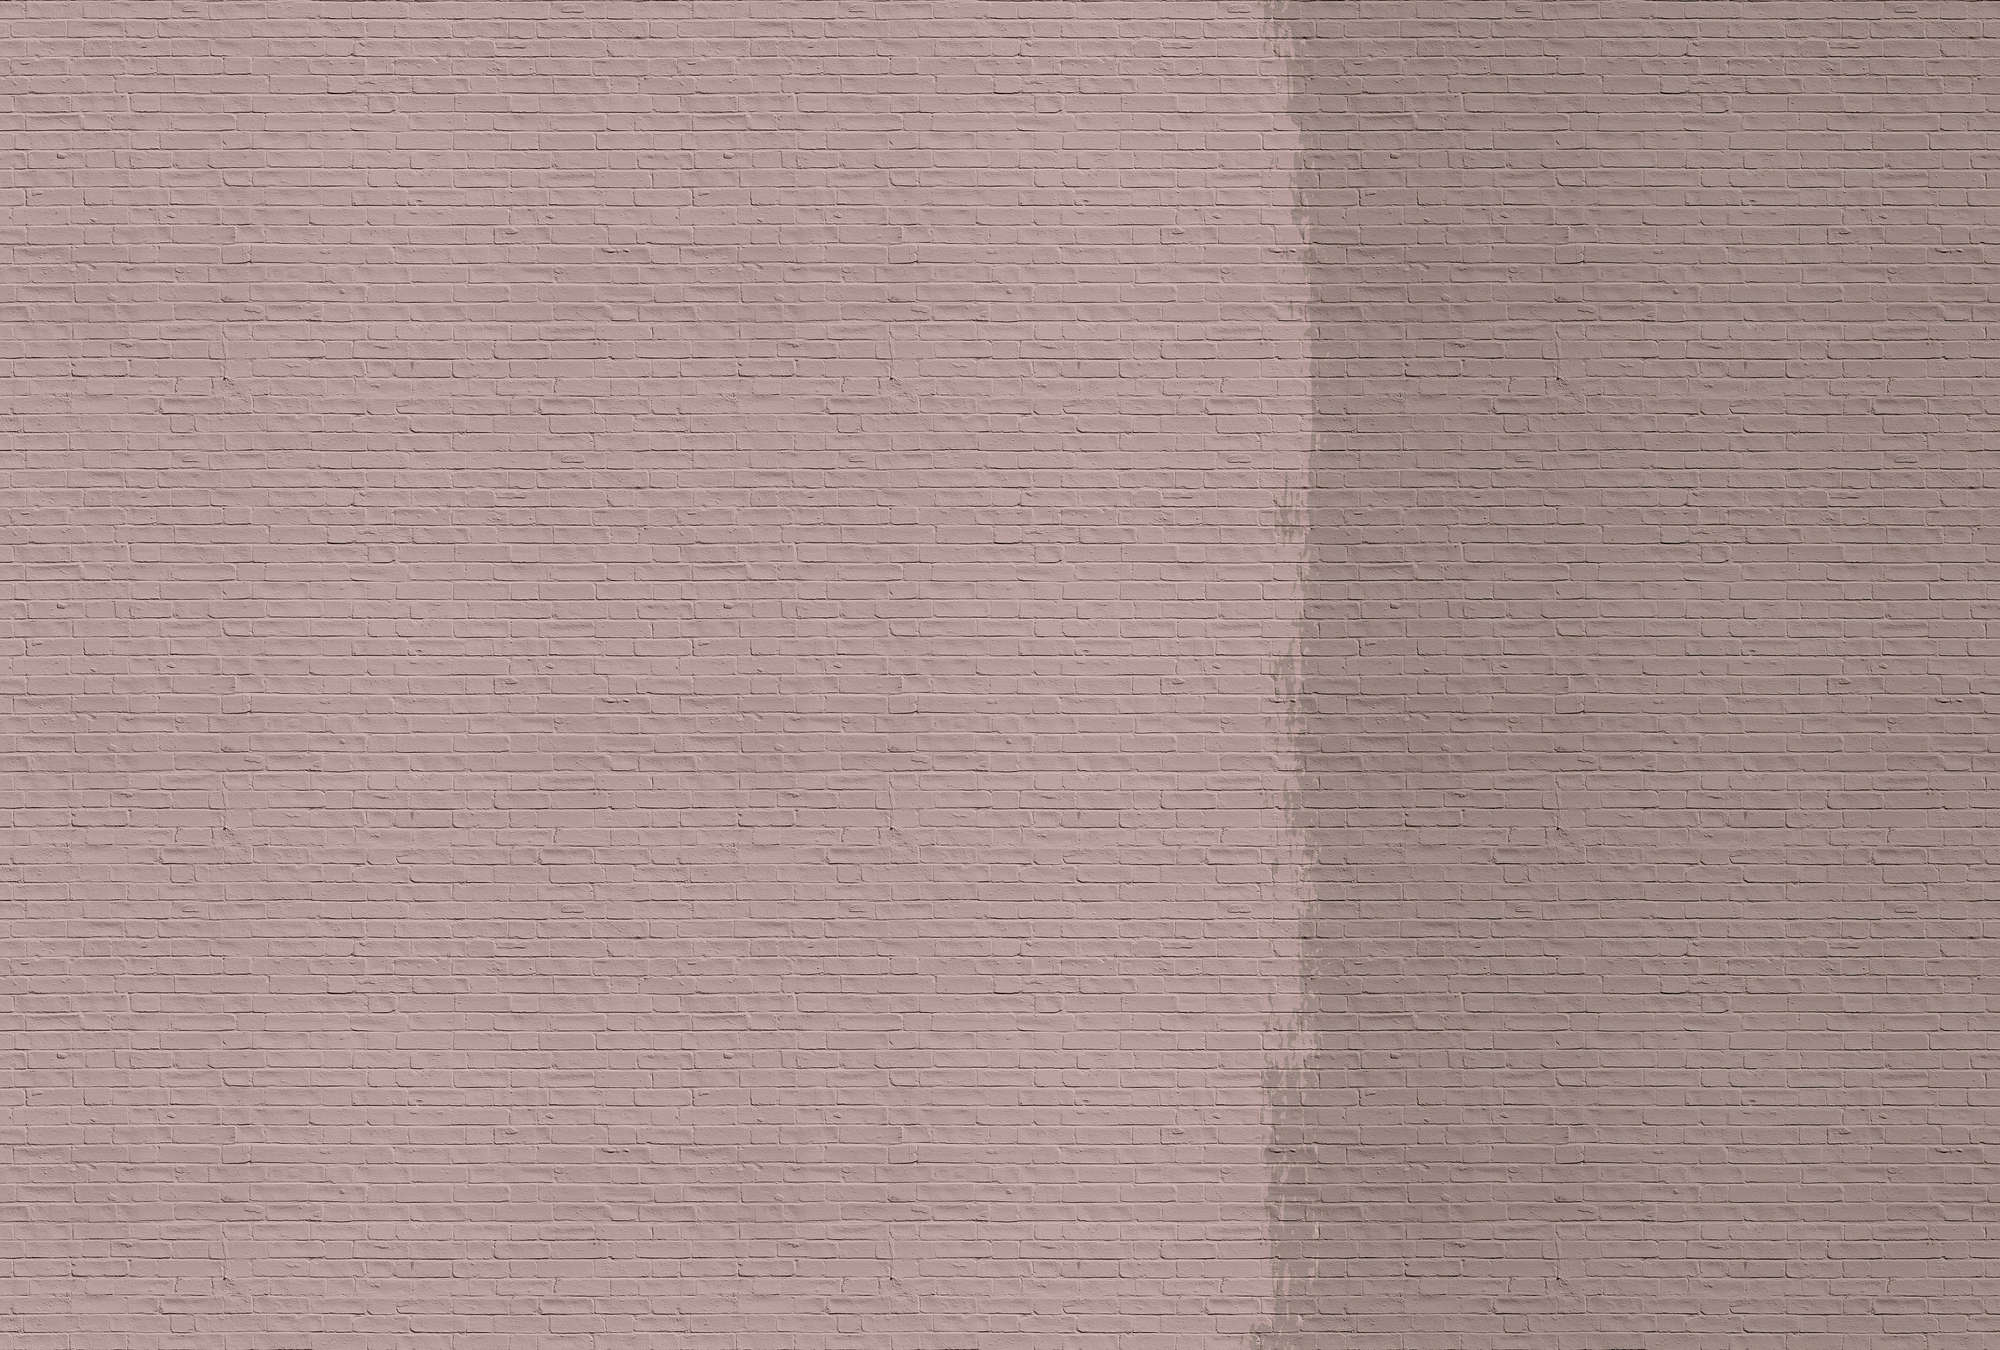             Tainted love 2 - Papier peint avec mur de briques peintes - rose, taupe | Premium intissé lisse
        